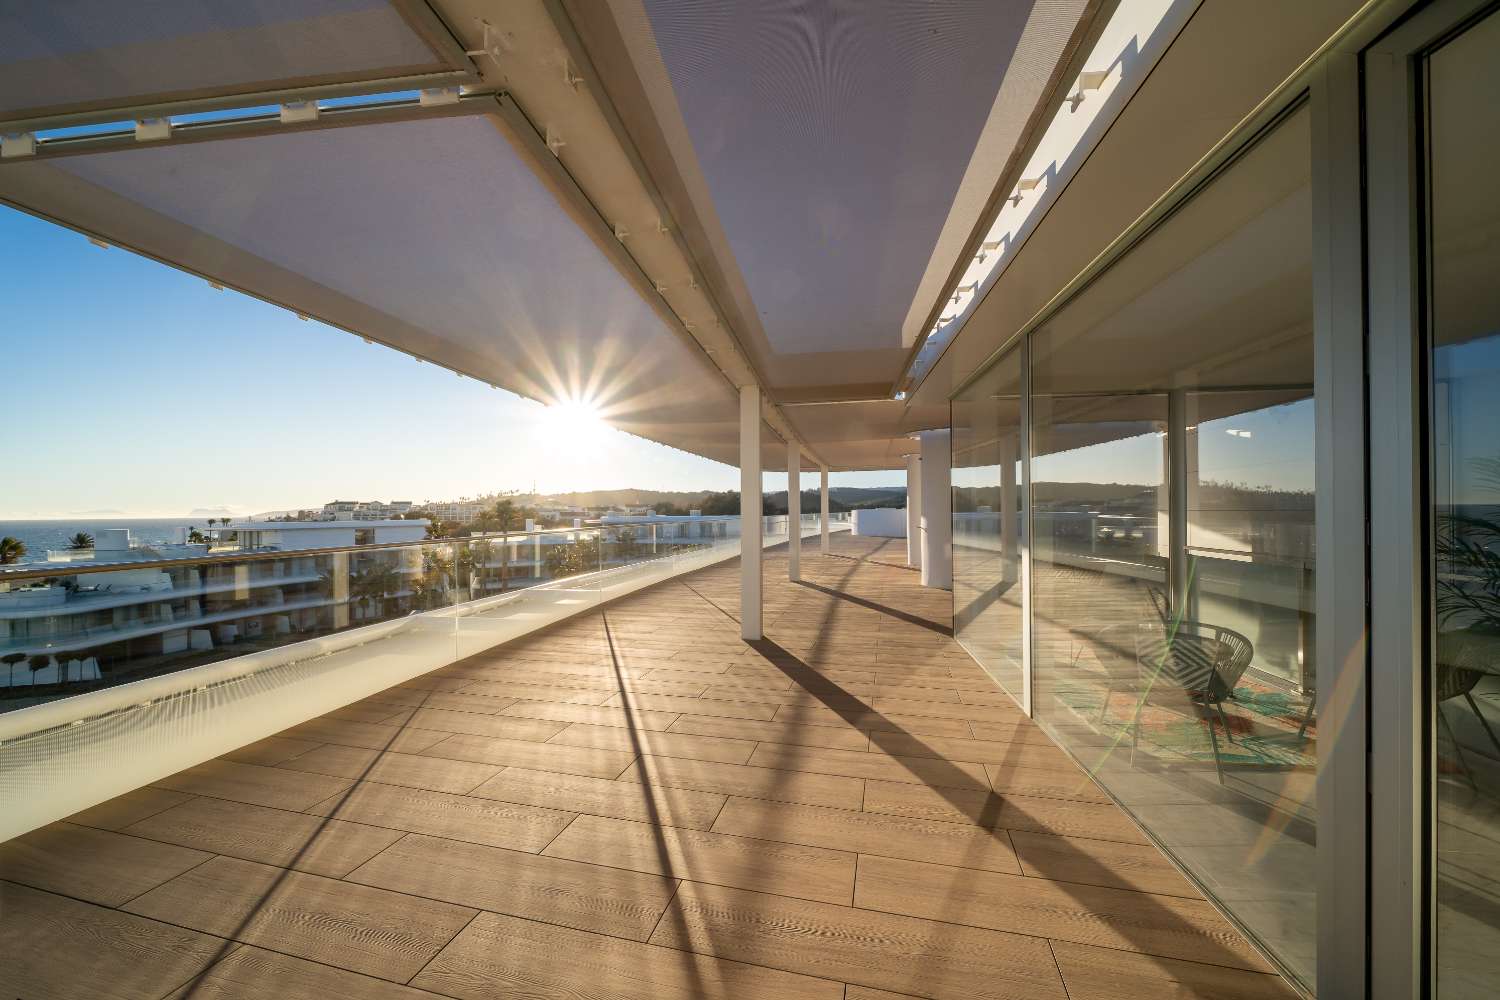 Fantastisch duplex penthouse met 4 slaapkamers en panoramisch uitzicht op zee. Interieurontwerp door Aalto bij de prijs inbegrepen.